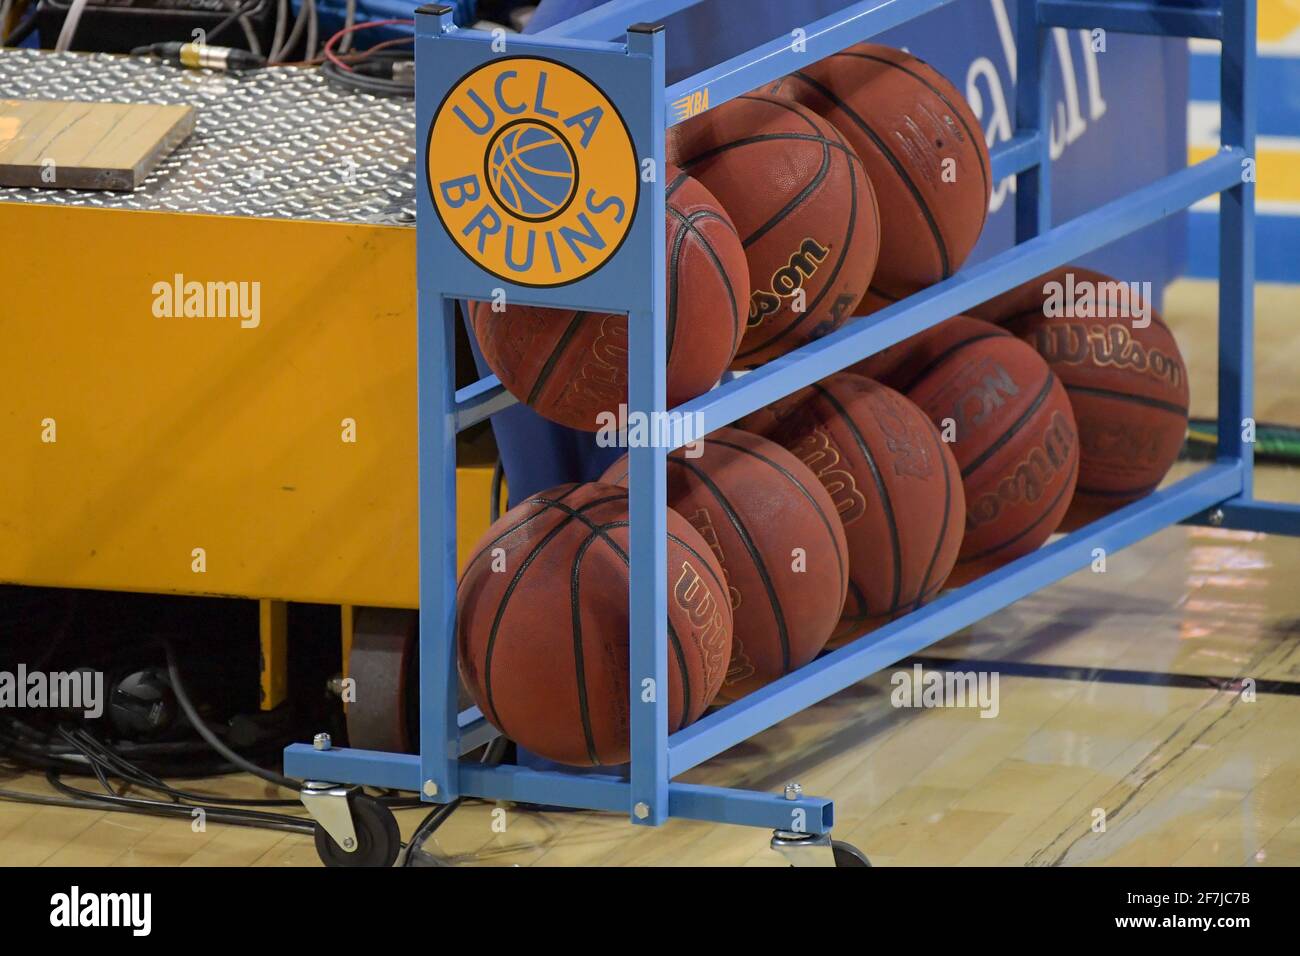 Vue détaillée d'un rack de basket-ball UCLA Bruins Wilson lors d'un match de basket-ball NCAA entre les Bruins UCLA et les chevaux de Troie USC, samedi 6 mars 2021 in Banque D'Images